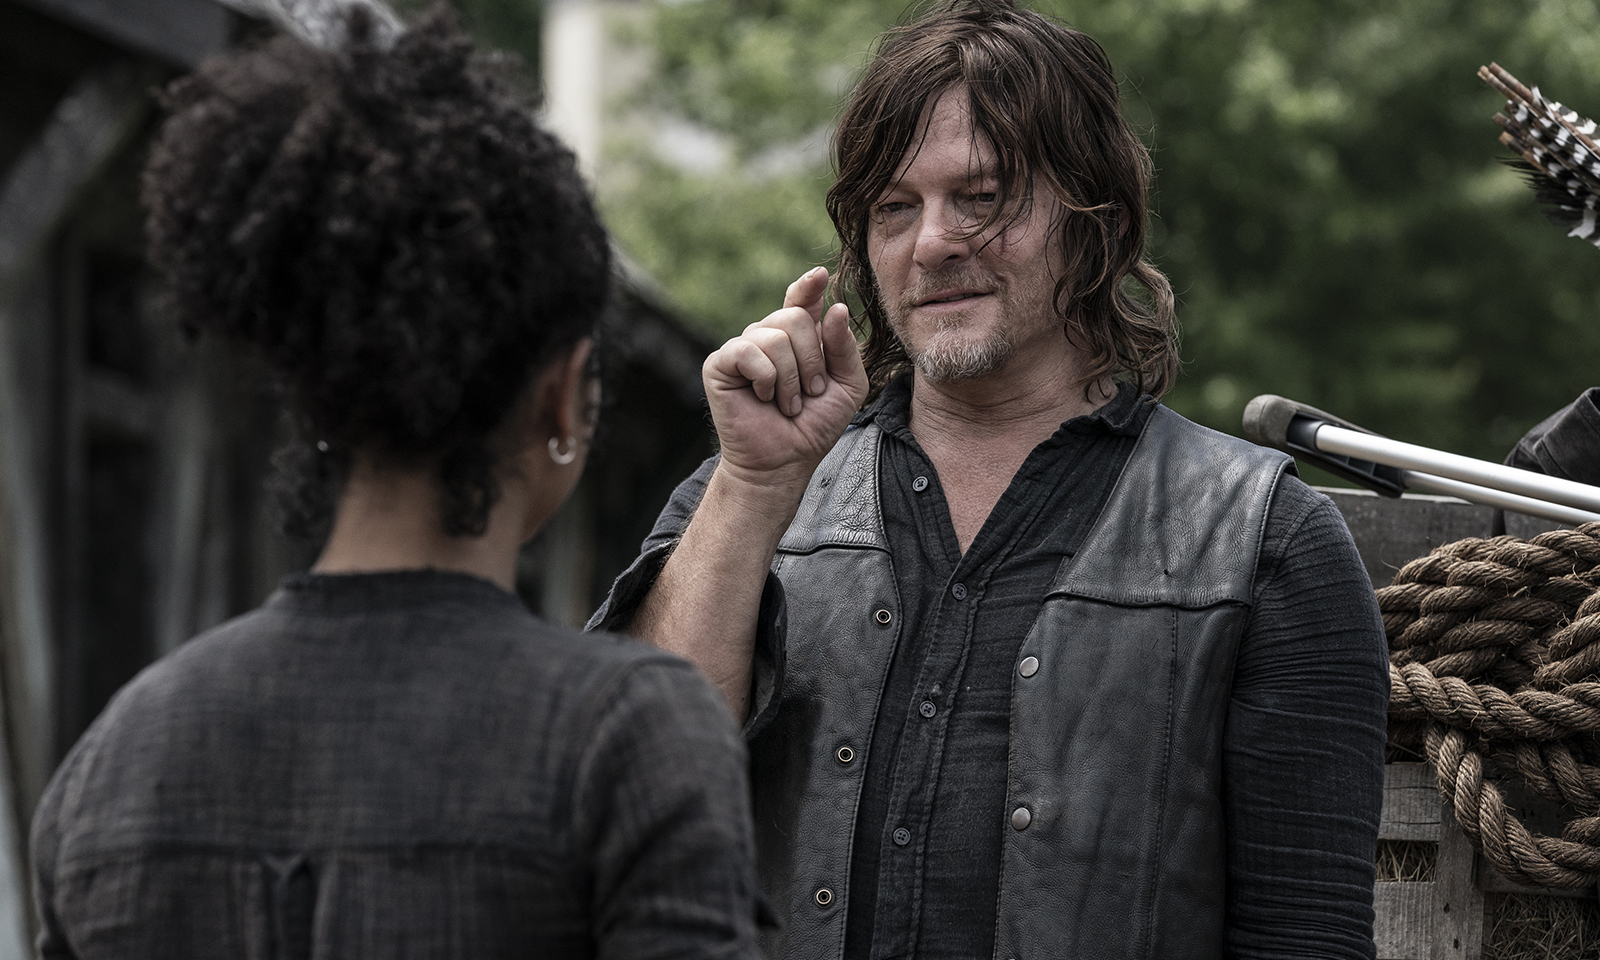 Daryl falando com Connie em cena do episódio 9 da 11ª temporada de The Walking Dead.